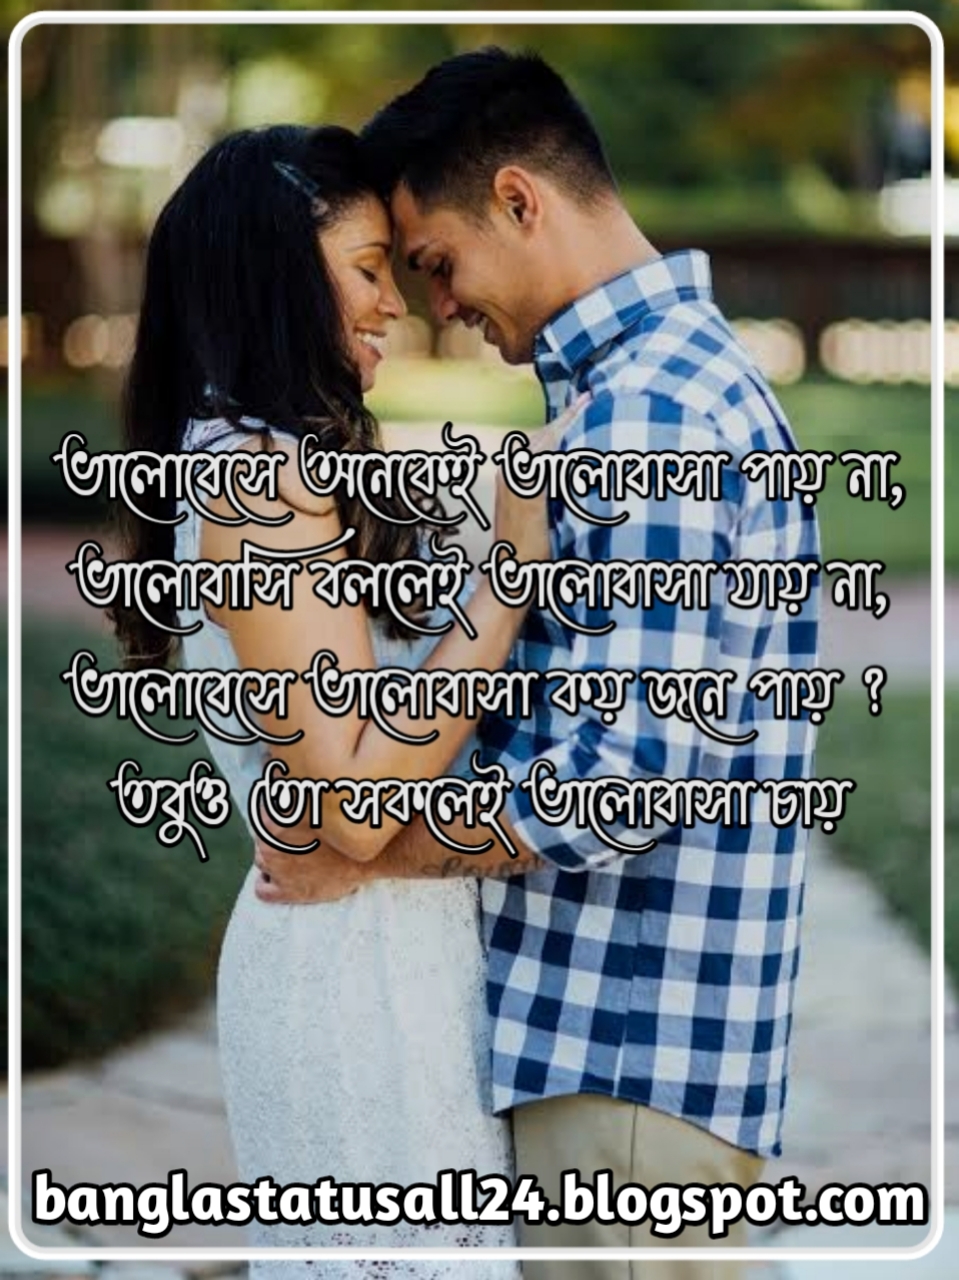 প্রেমের ছন্দ, ভালোবাসার ছন্দ, Love Status, Bangla Love Status, ছন্দ লেখা ছবি, bangla chondo pic, chondo lakha pic, facebook caption love, banglastatusall24